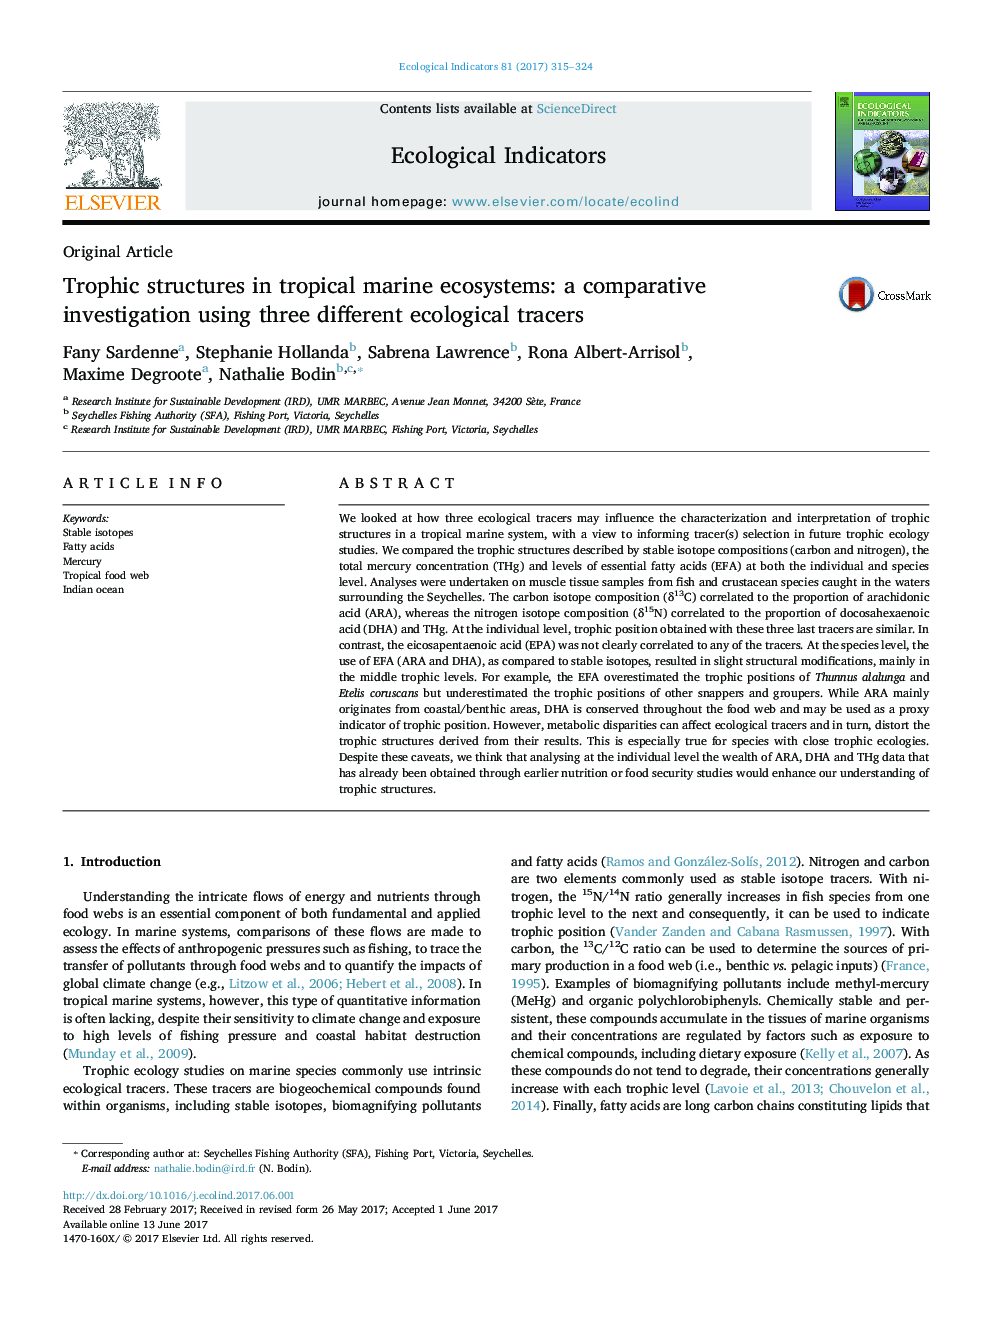 سازه های اصلی مقاله در ساختارهای اکوسیستم دریایی گرمسیری: یک مطالعه مقایسه ای با استفاده از سه تکه های مختلف اکولوژیکی 